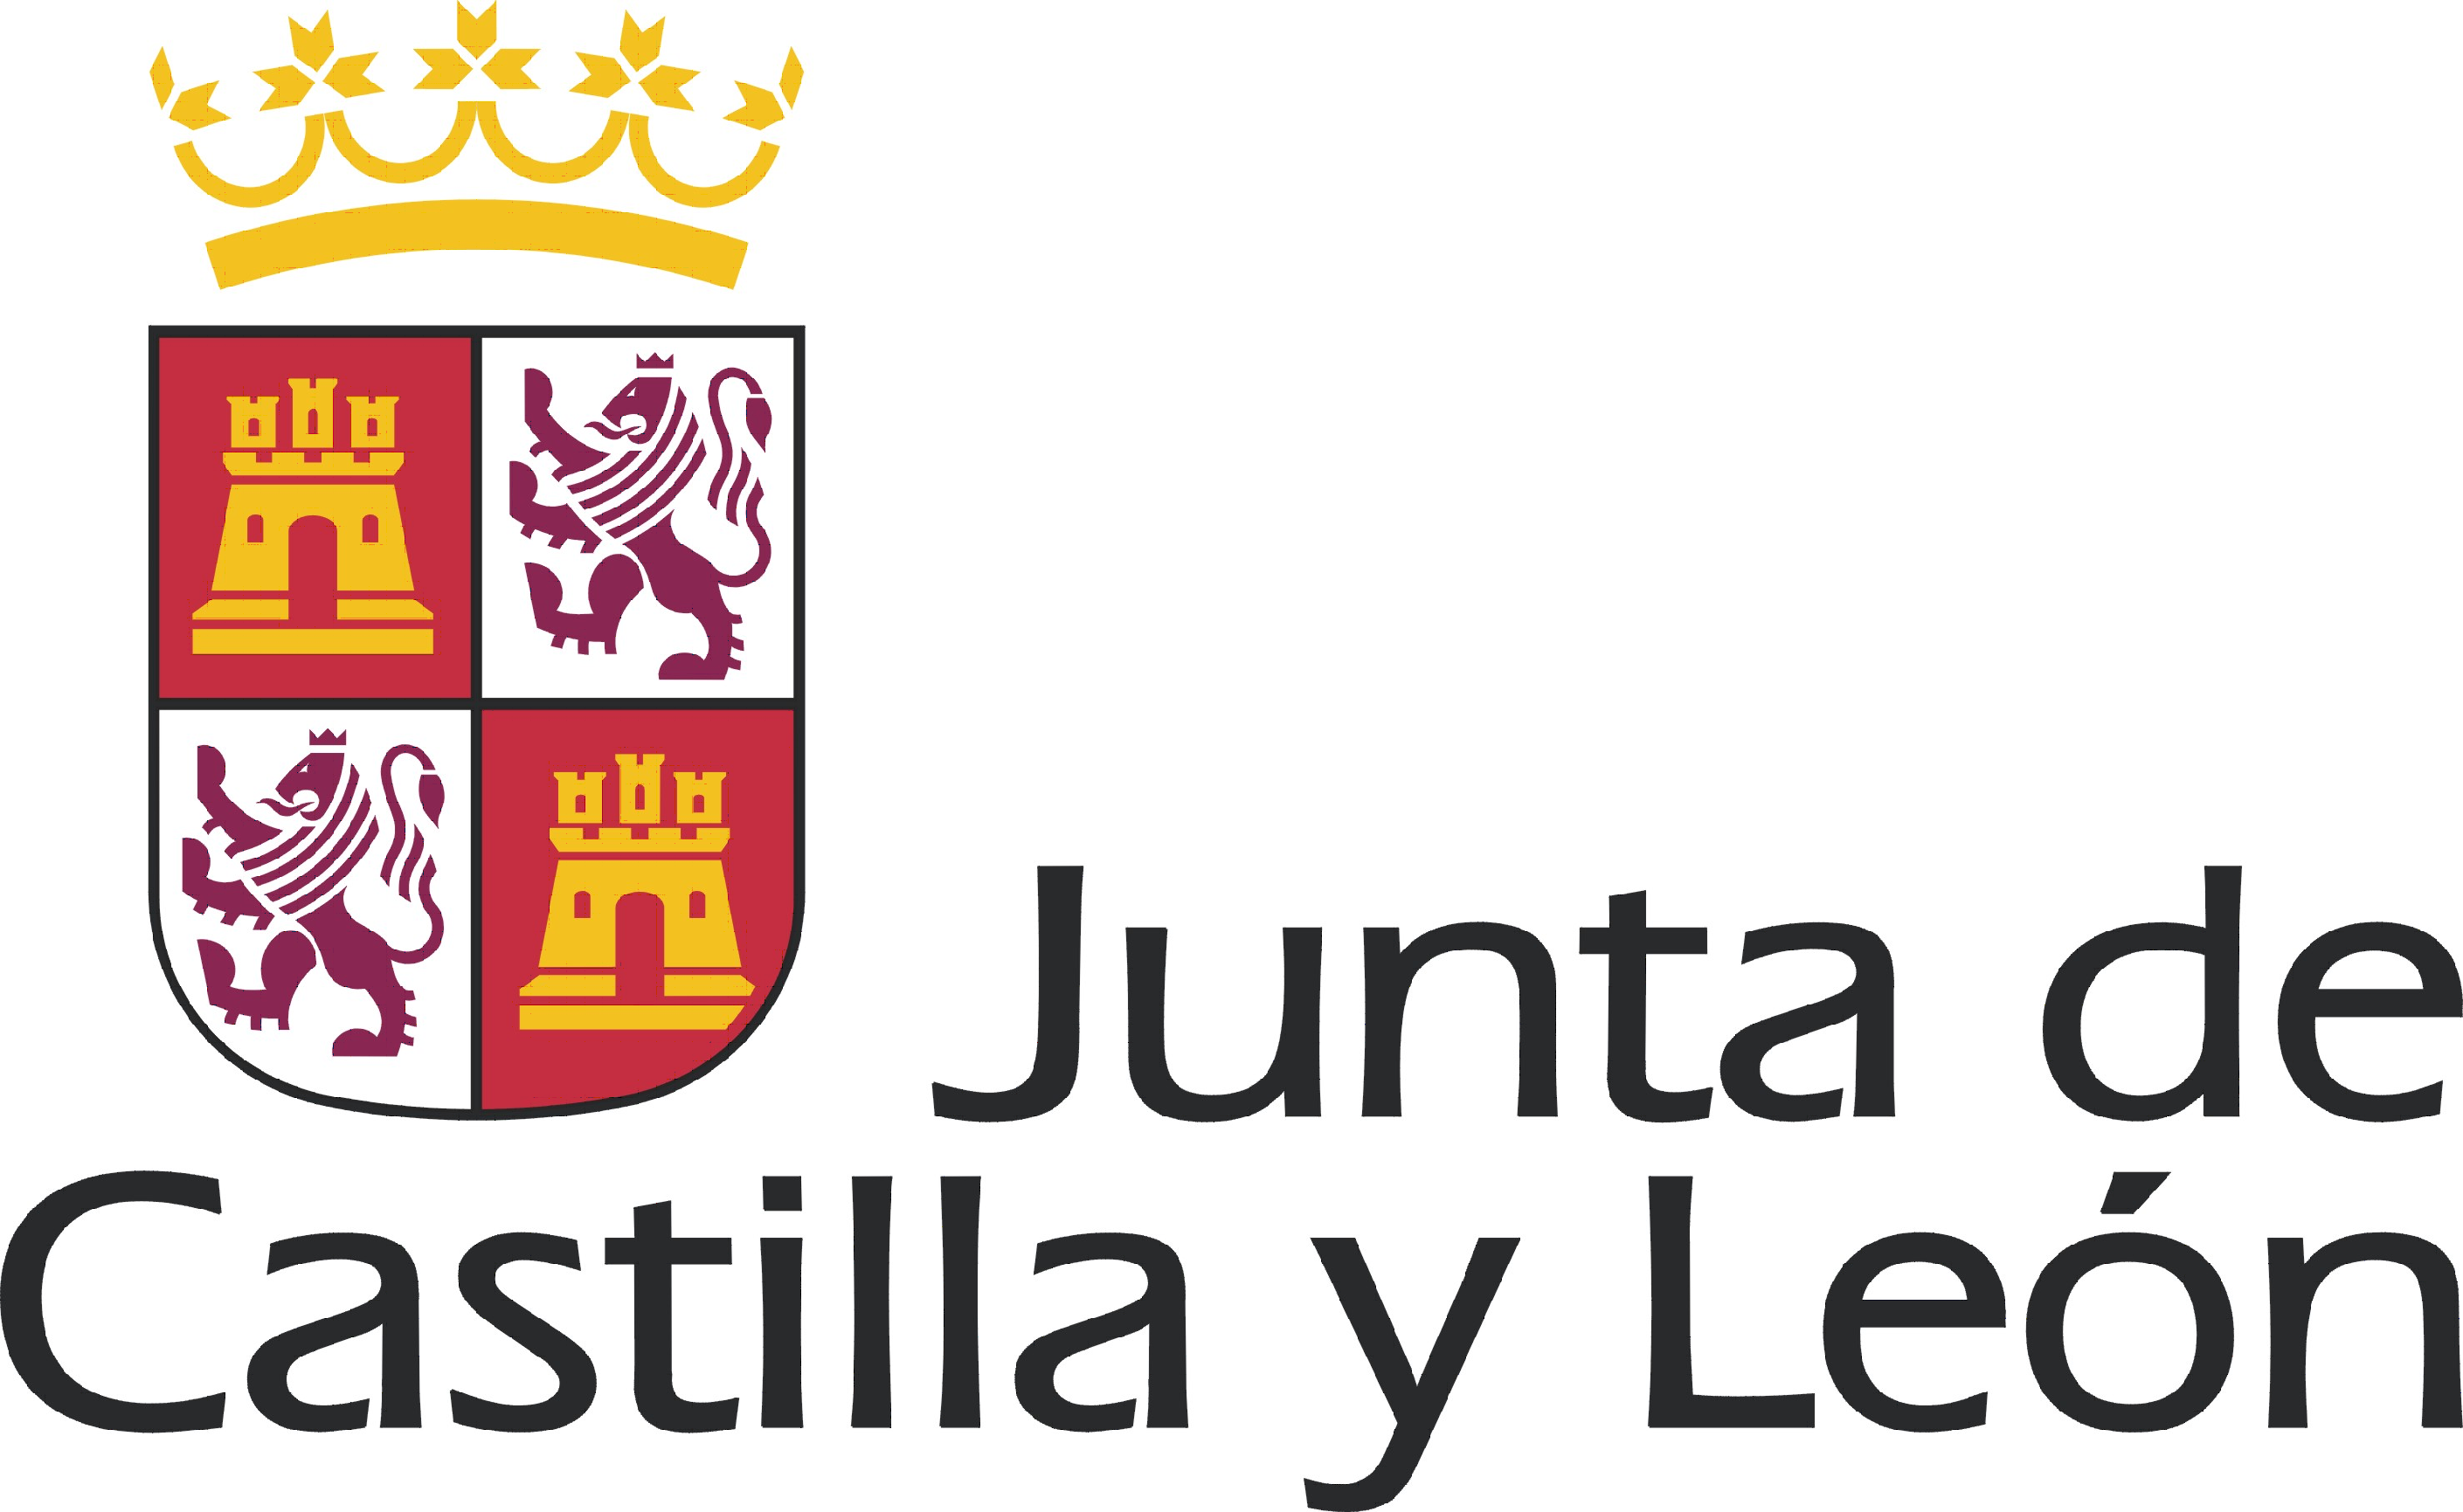 logo JCyL